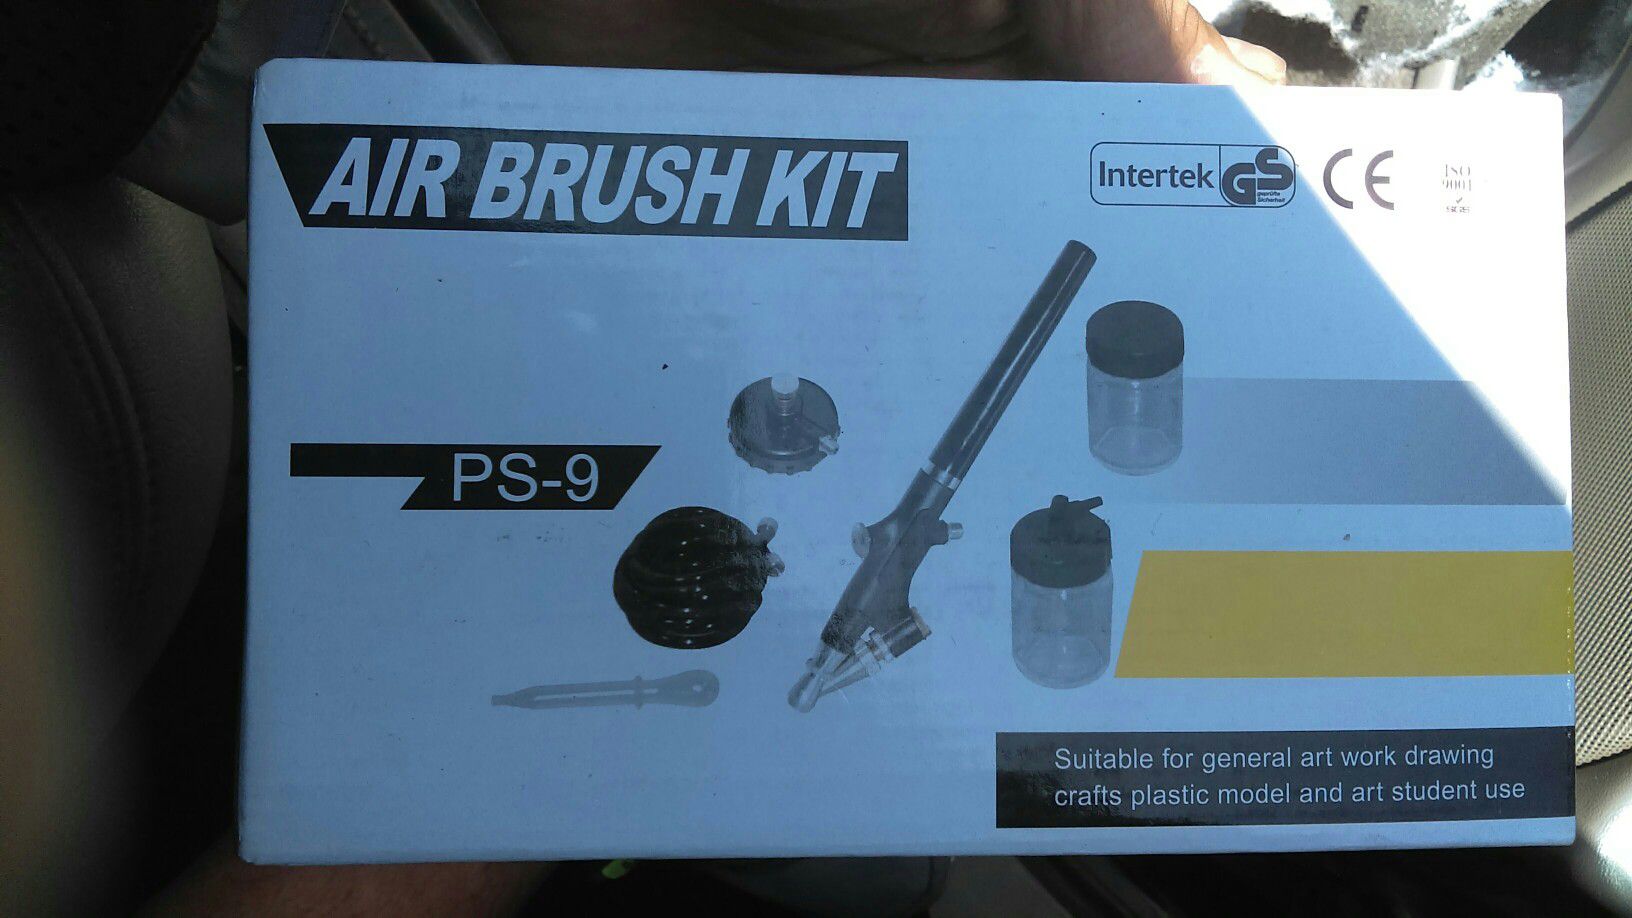 Air brush kits new $18.00